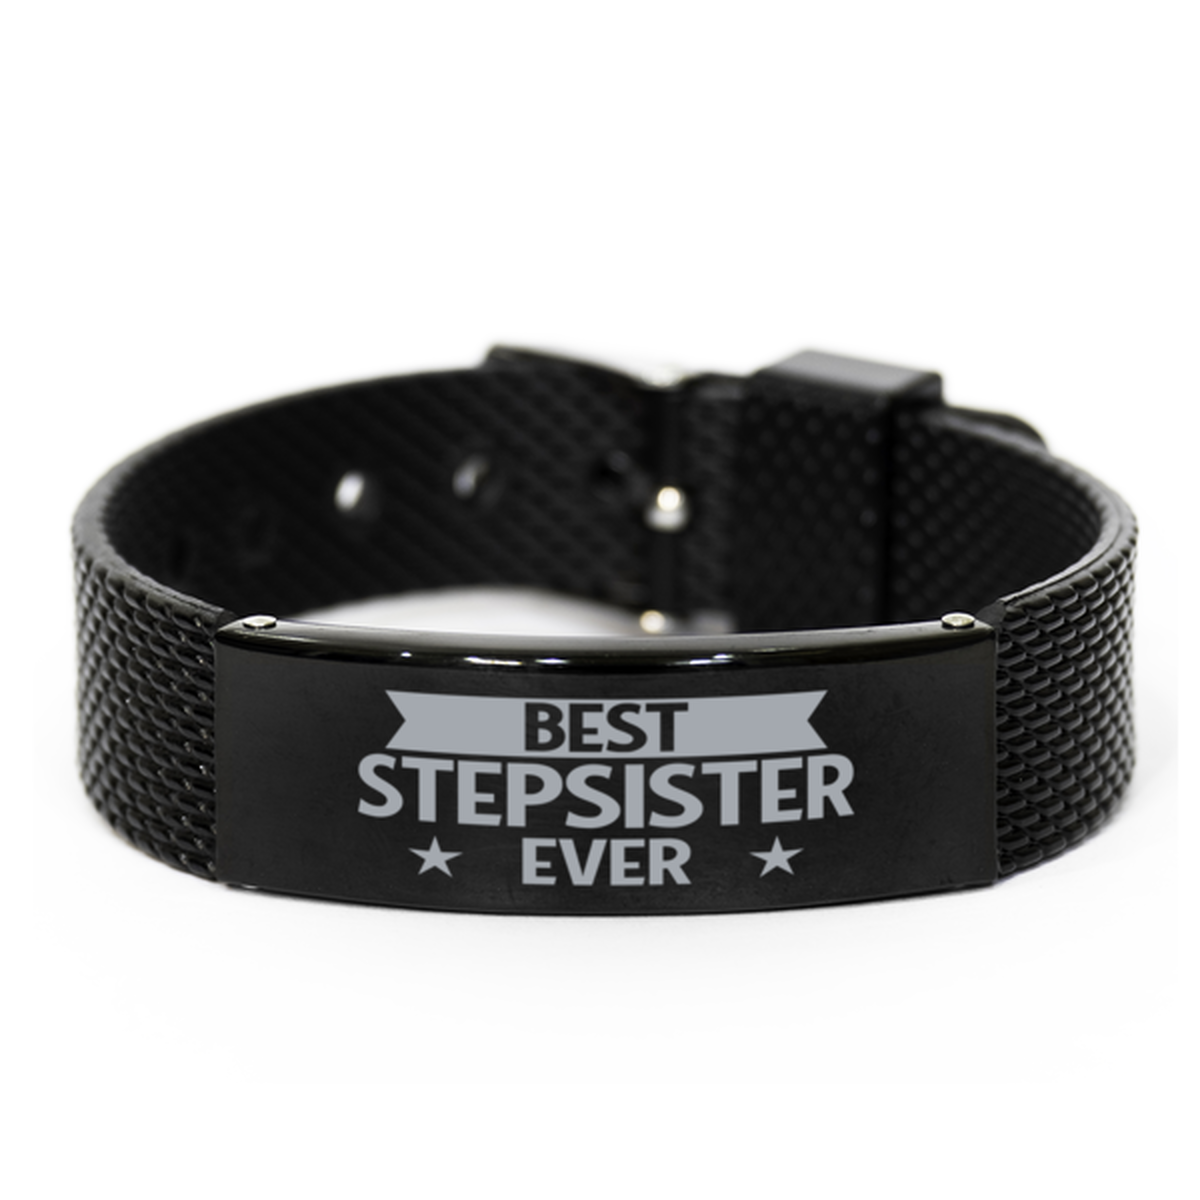 Best Stepsister Ever Stepsister Gifts, Gag Engraved Bracelet For Stepsister, Best Family Gifts For Women